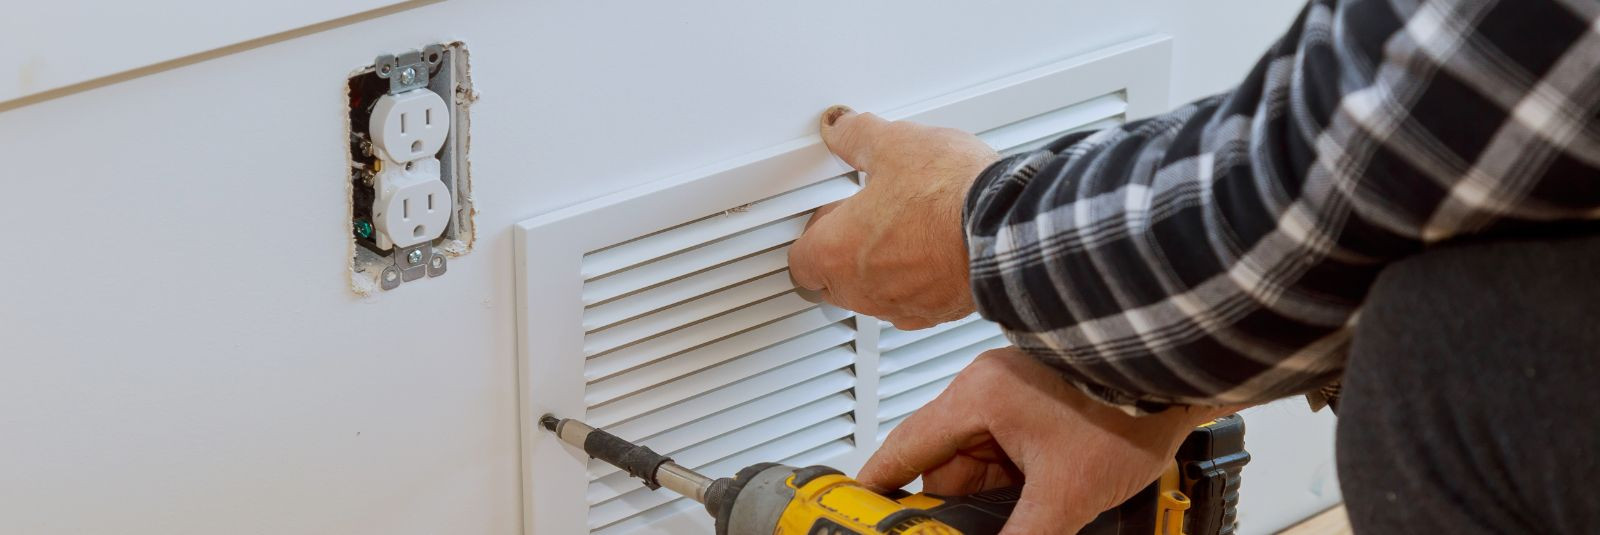 Kas oled kunagi mõelnud, kuidas sinu kodu ventilatsioonisüsteem võib mõjutada sinu tervist ja üldist heaolu? Tihti võib see olla unustatud aspekt, kuid õige ven